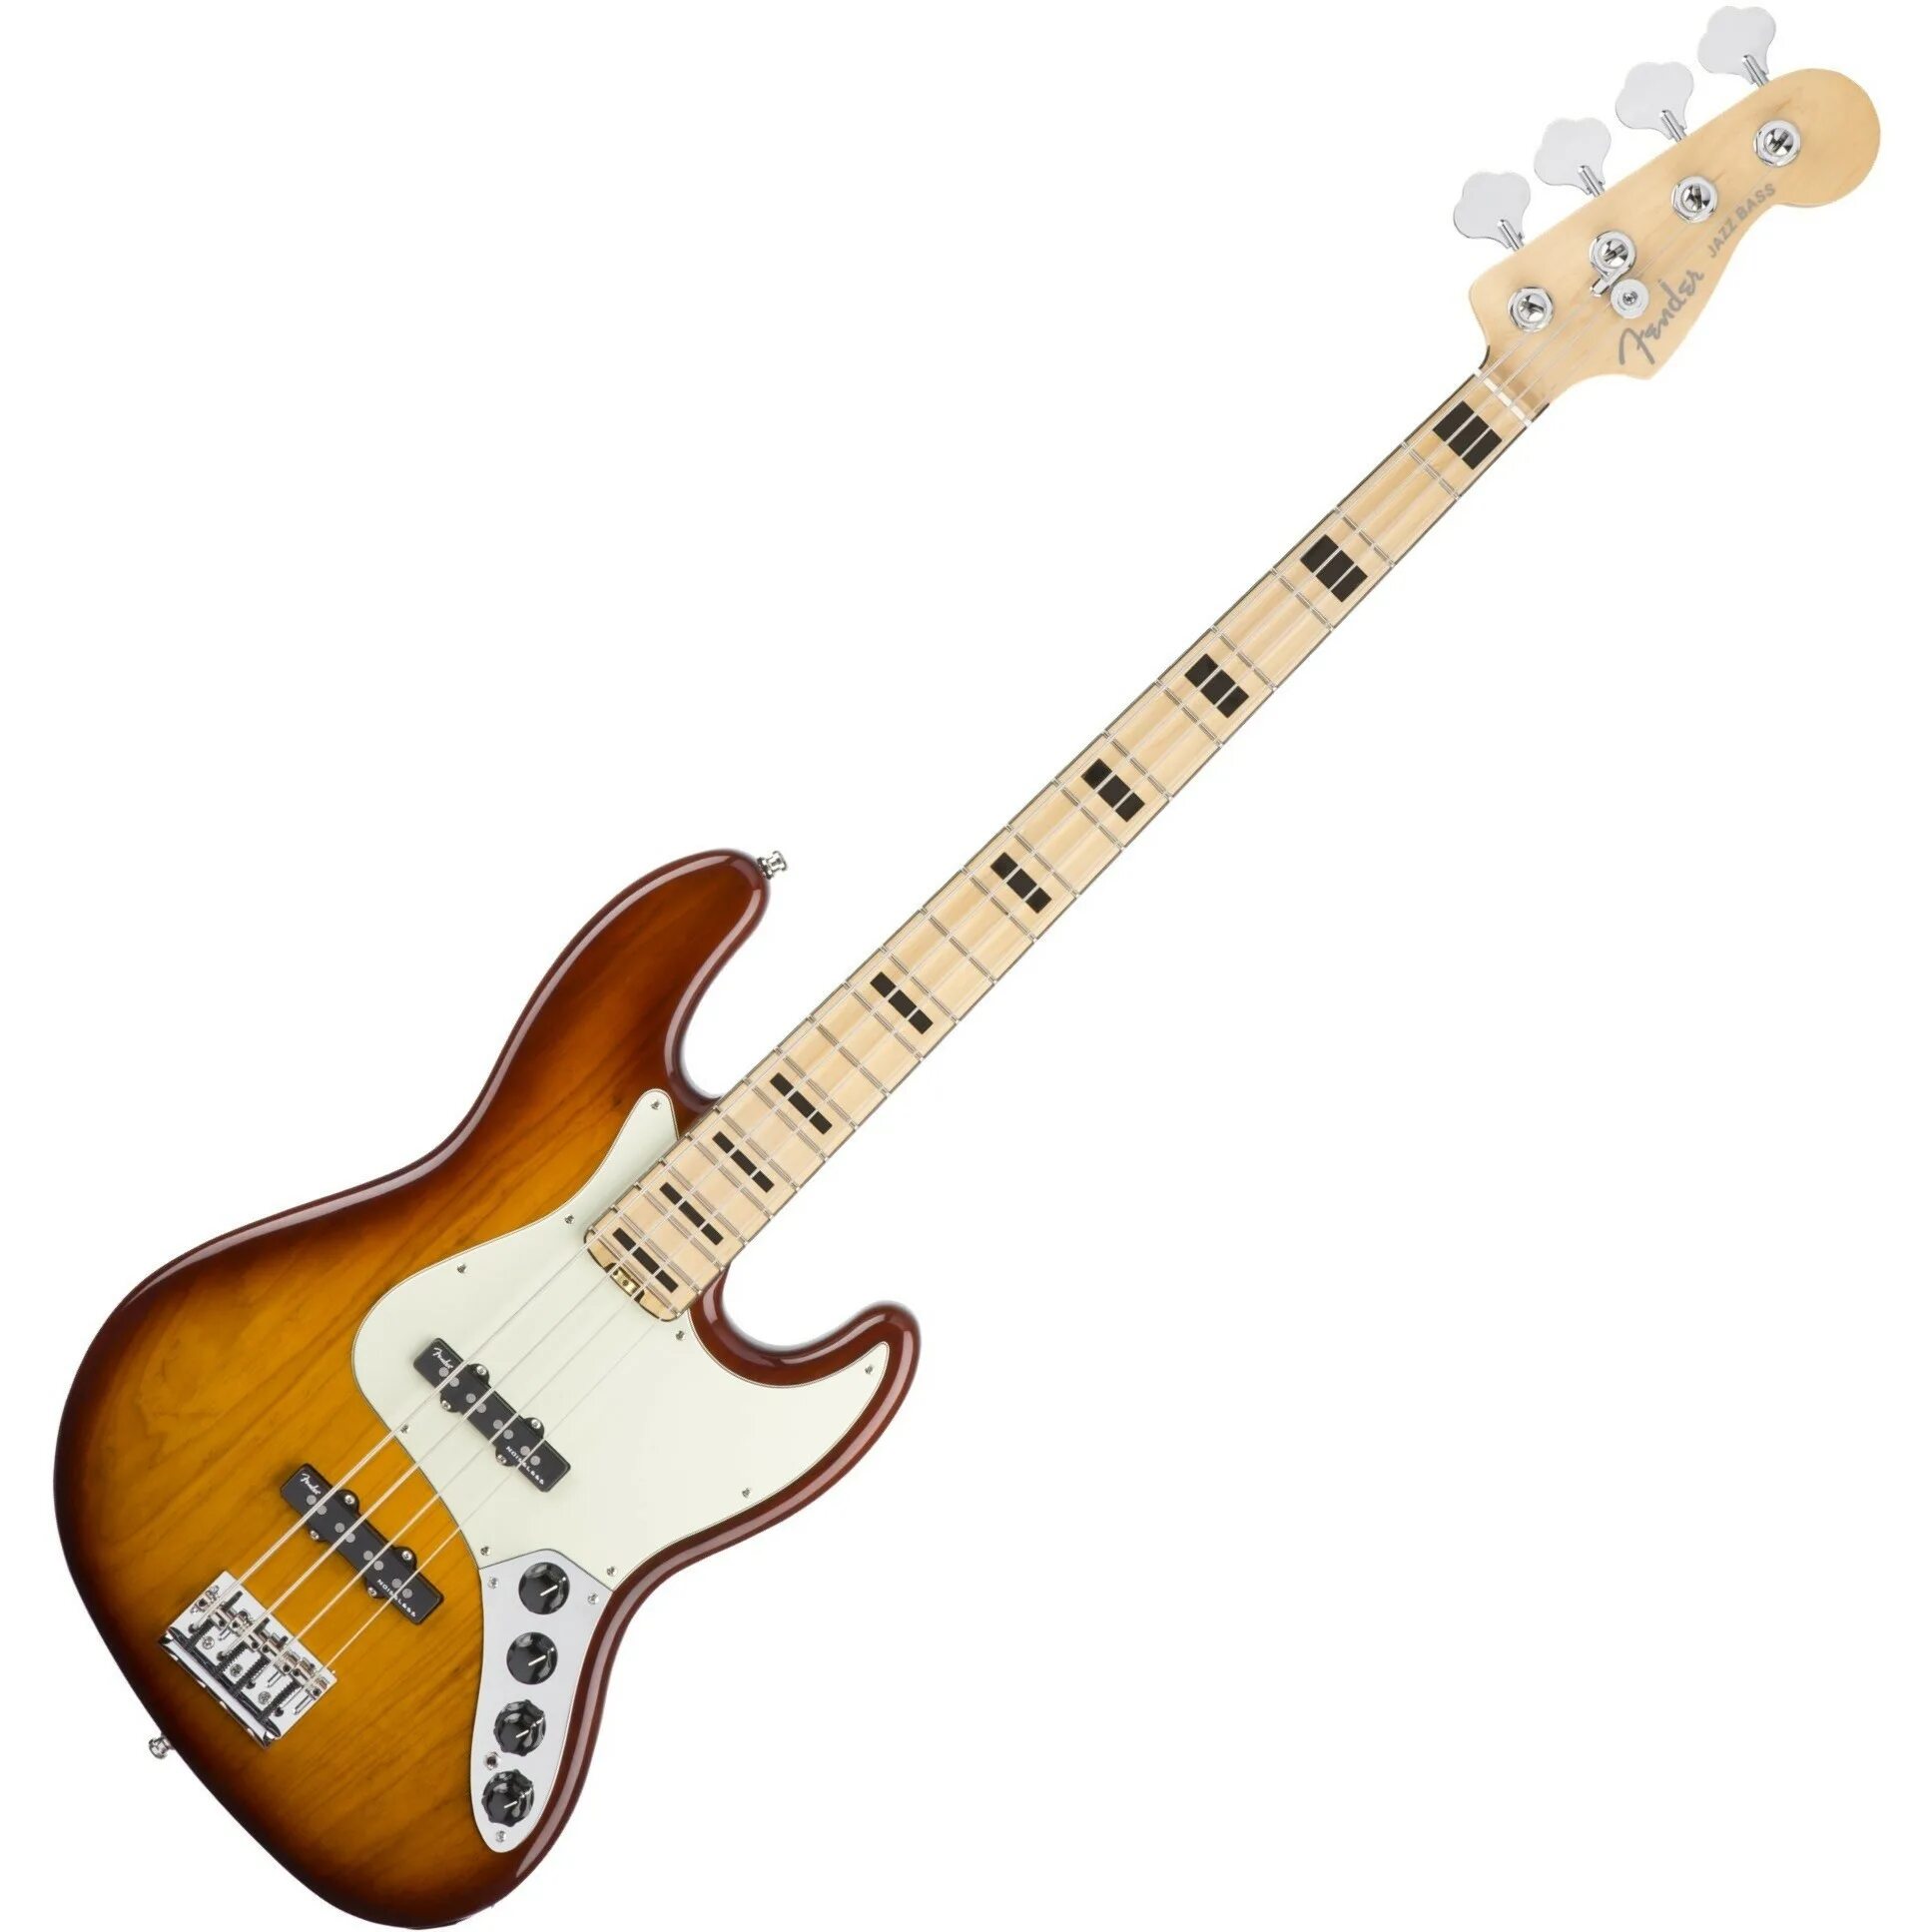 Цена басс. Fender American Elite Jazz Bass v. Fender Jazz Bass Elite 5 Sunburst. Fender American Elite Jazz Bass. Бас гитара Fender Jazz Bass Sunburst.